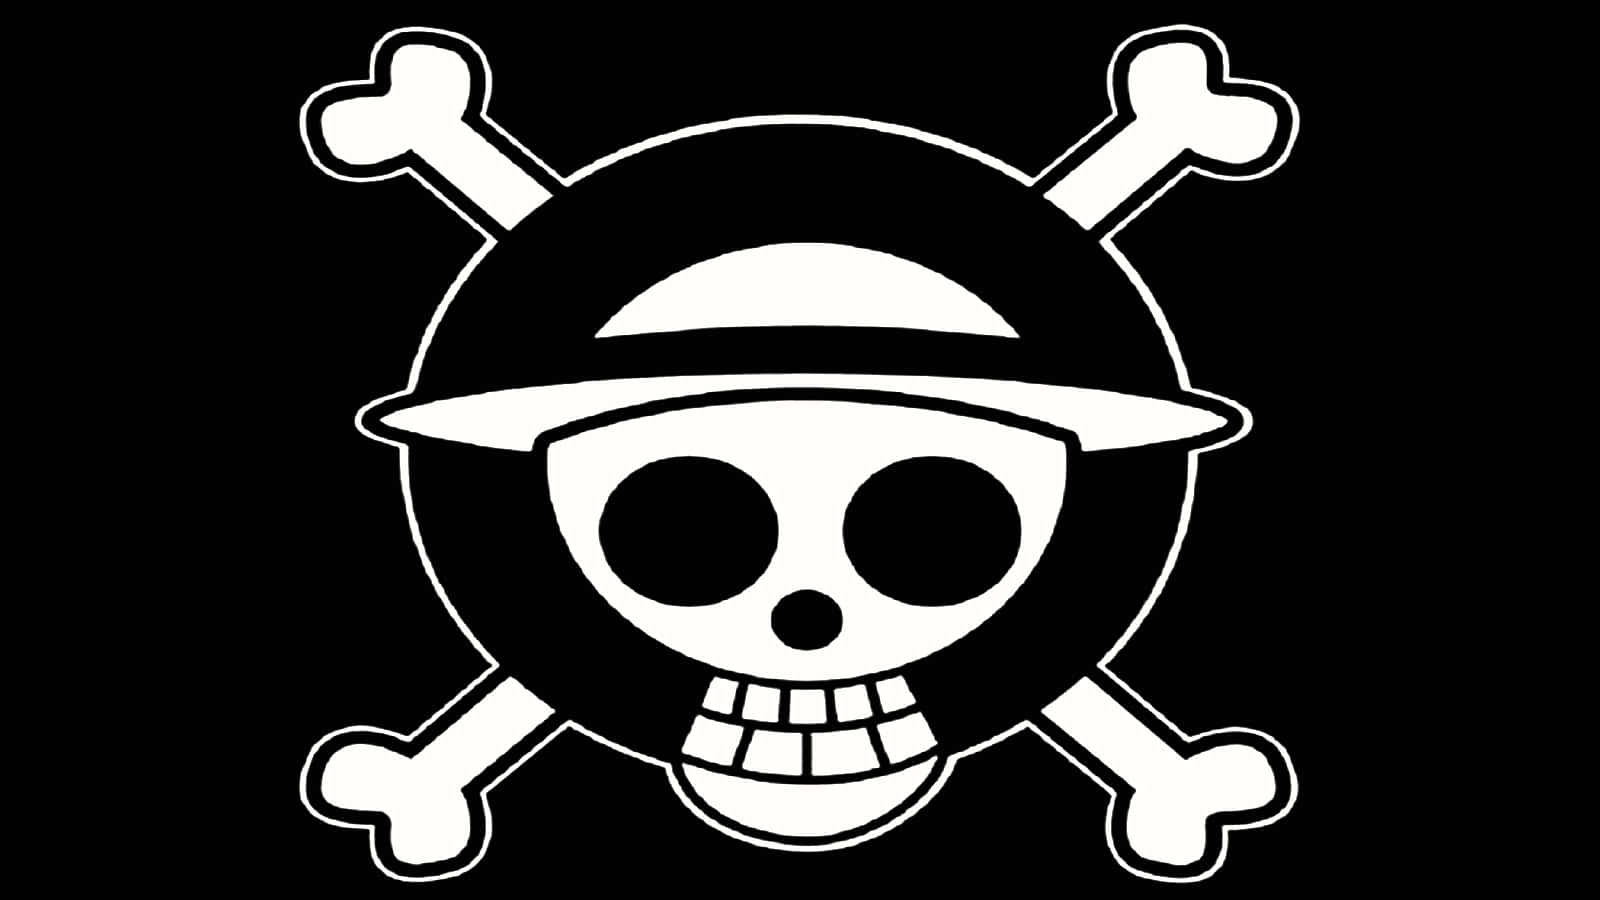 Einone Piece Totenkopf Und Gekreuzte Knochen Logo Wallpaper